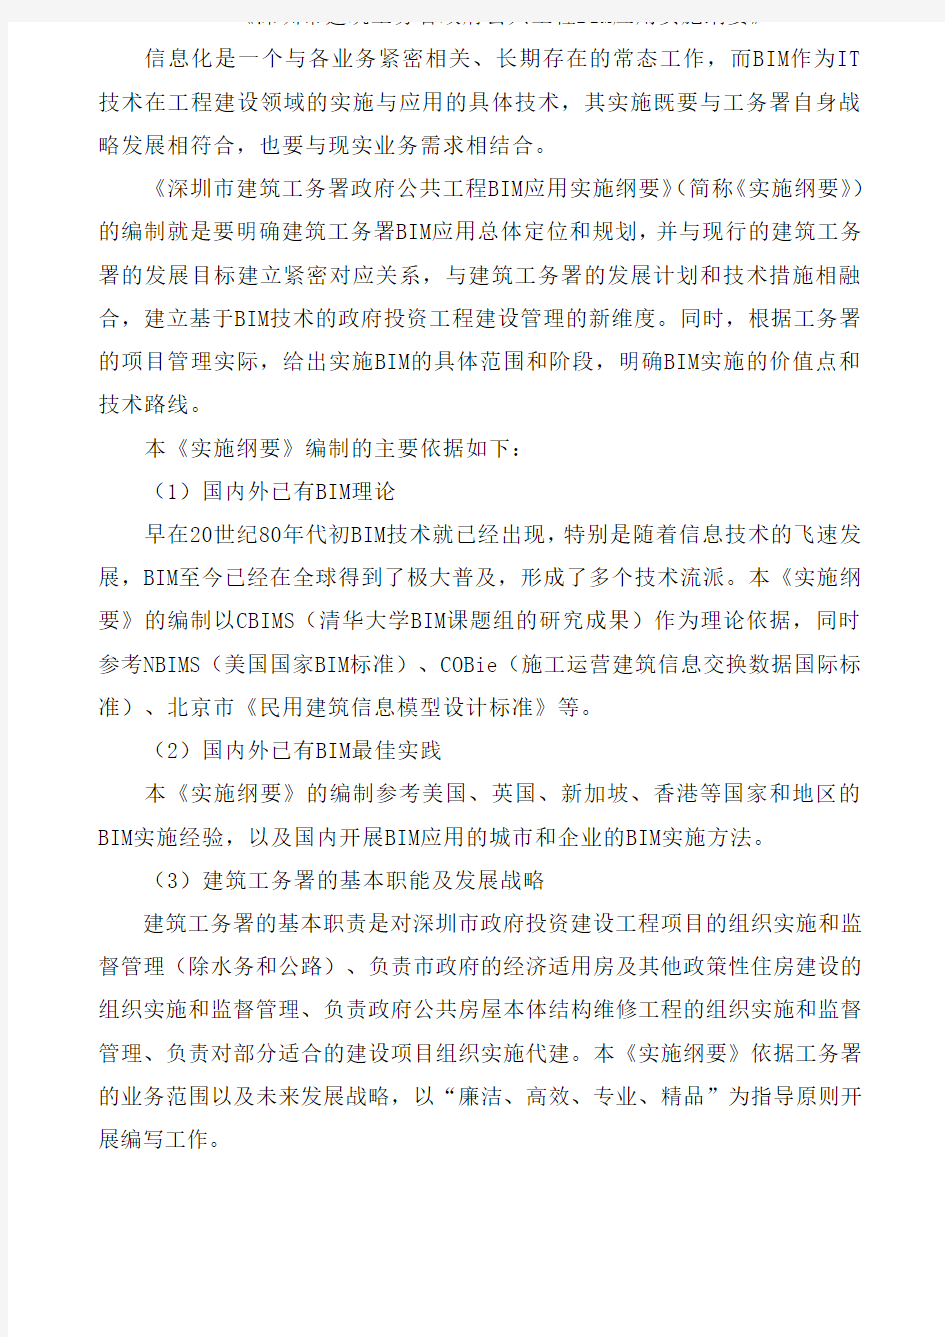 深圳市建筑工务署政府公共工程BIM应用实施纲要